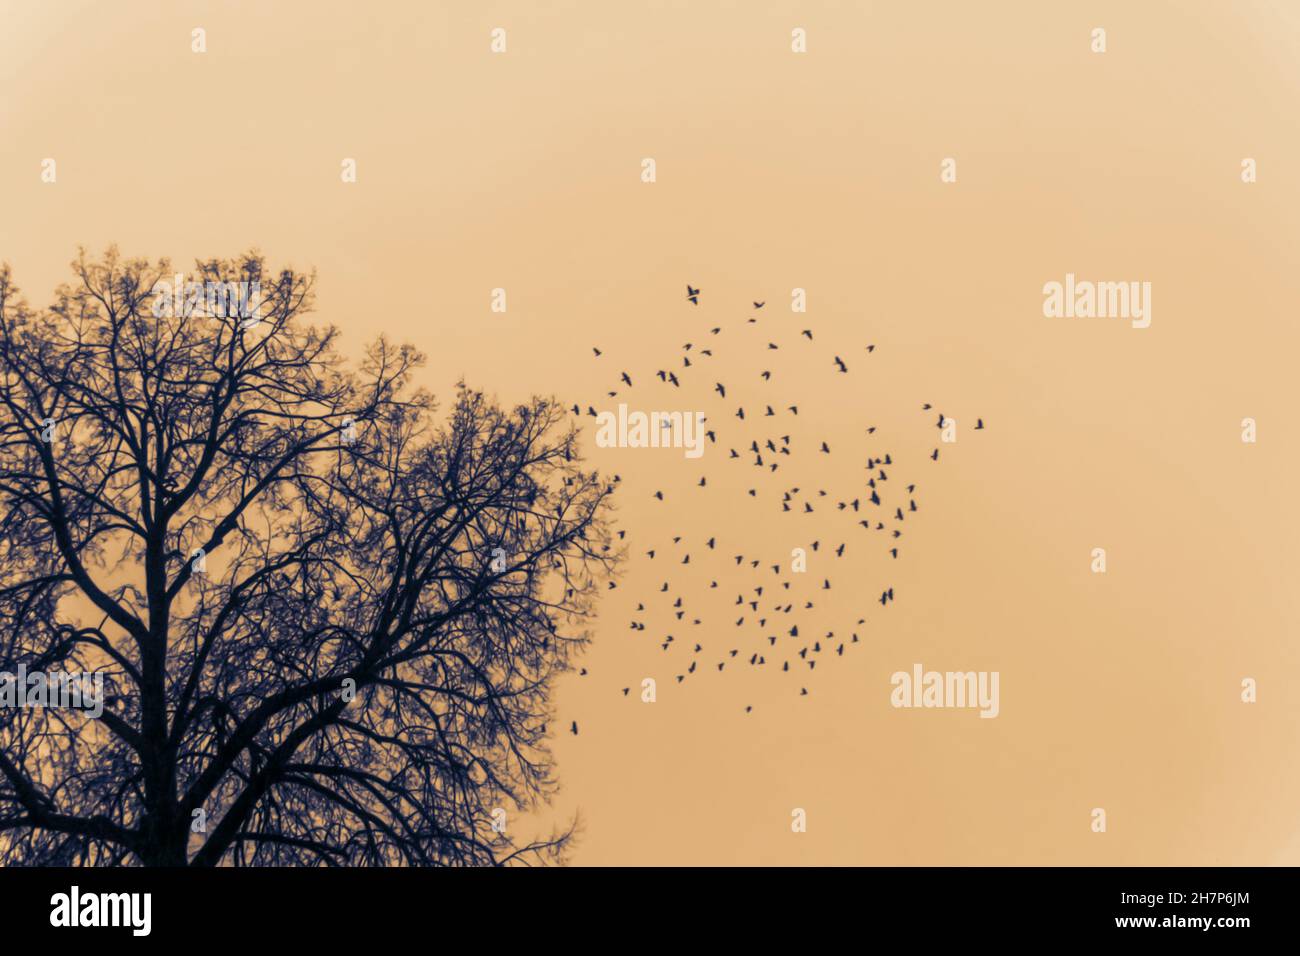 Fantasy estudio etude sobre el tema de los pájaros volando lejos en el otoño futuro Foto de stock